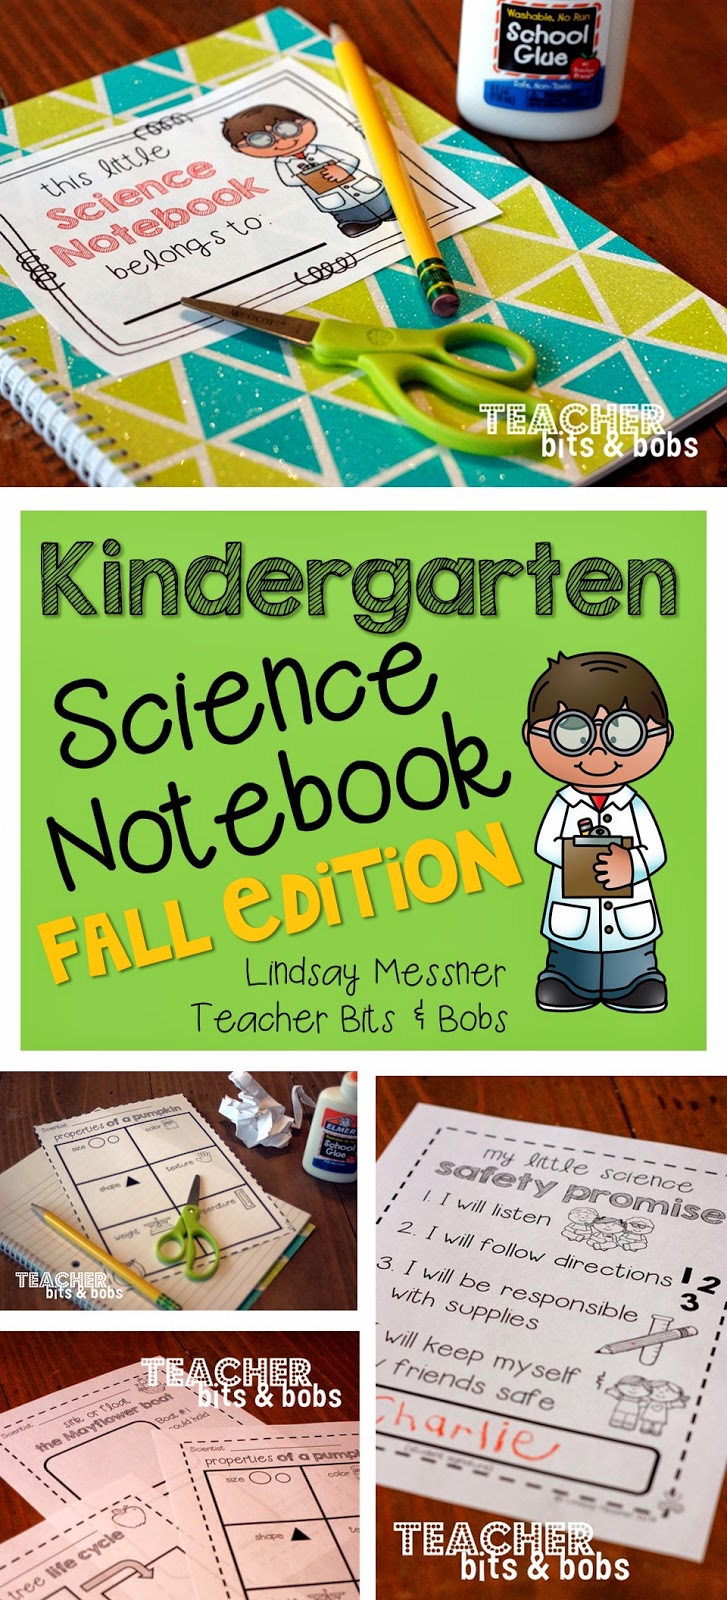 http://www.teacherspayteachers.com/Product/Kindergarten-Science-Notebook-Fall-Edition-1367269